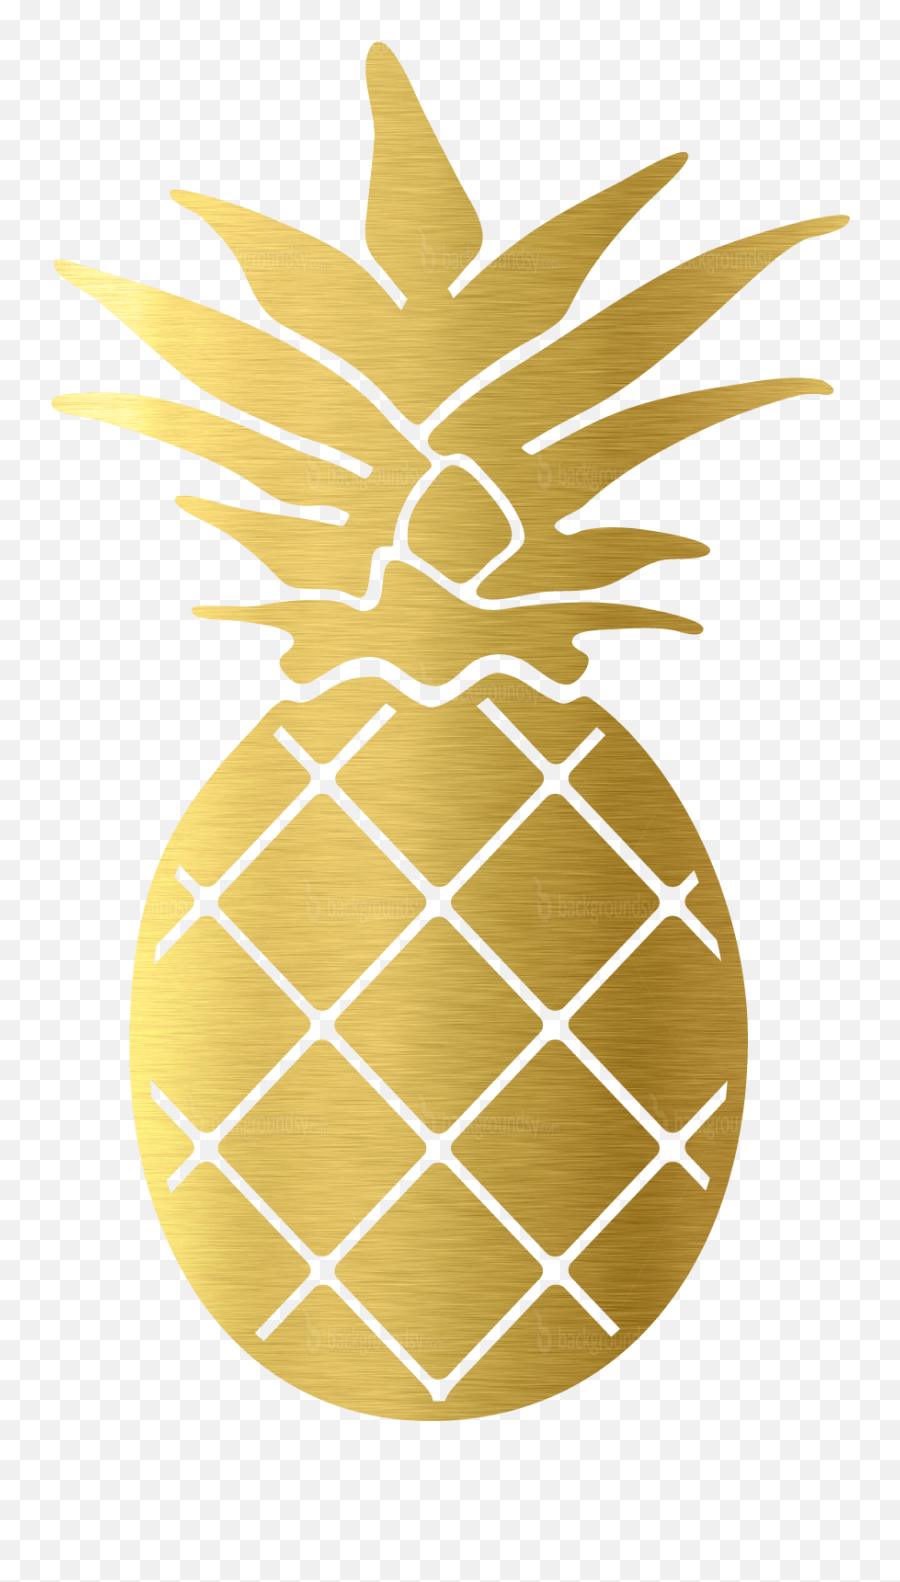 Pineapple Clipart Glitter Pineapple - Transparent Gold Pineapple Clipart Emoji,Pineapple Clipart